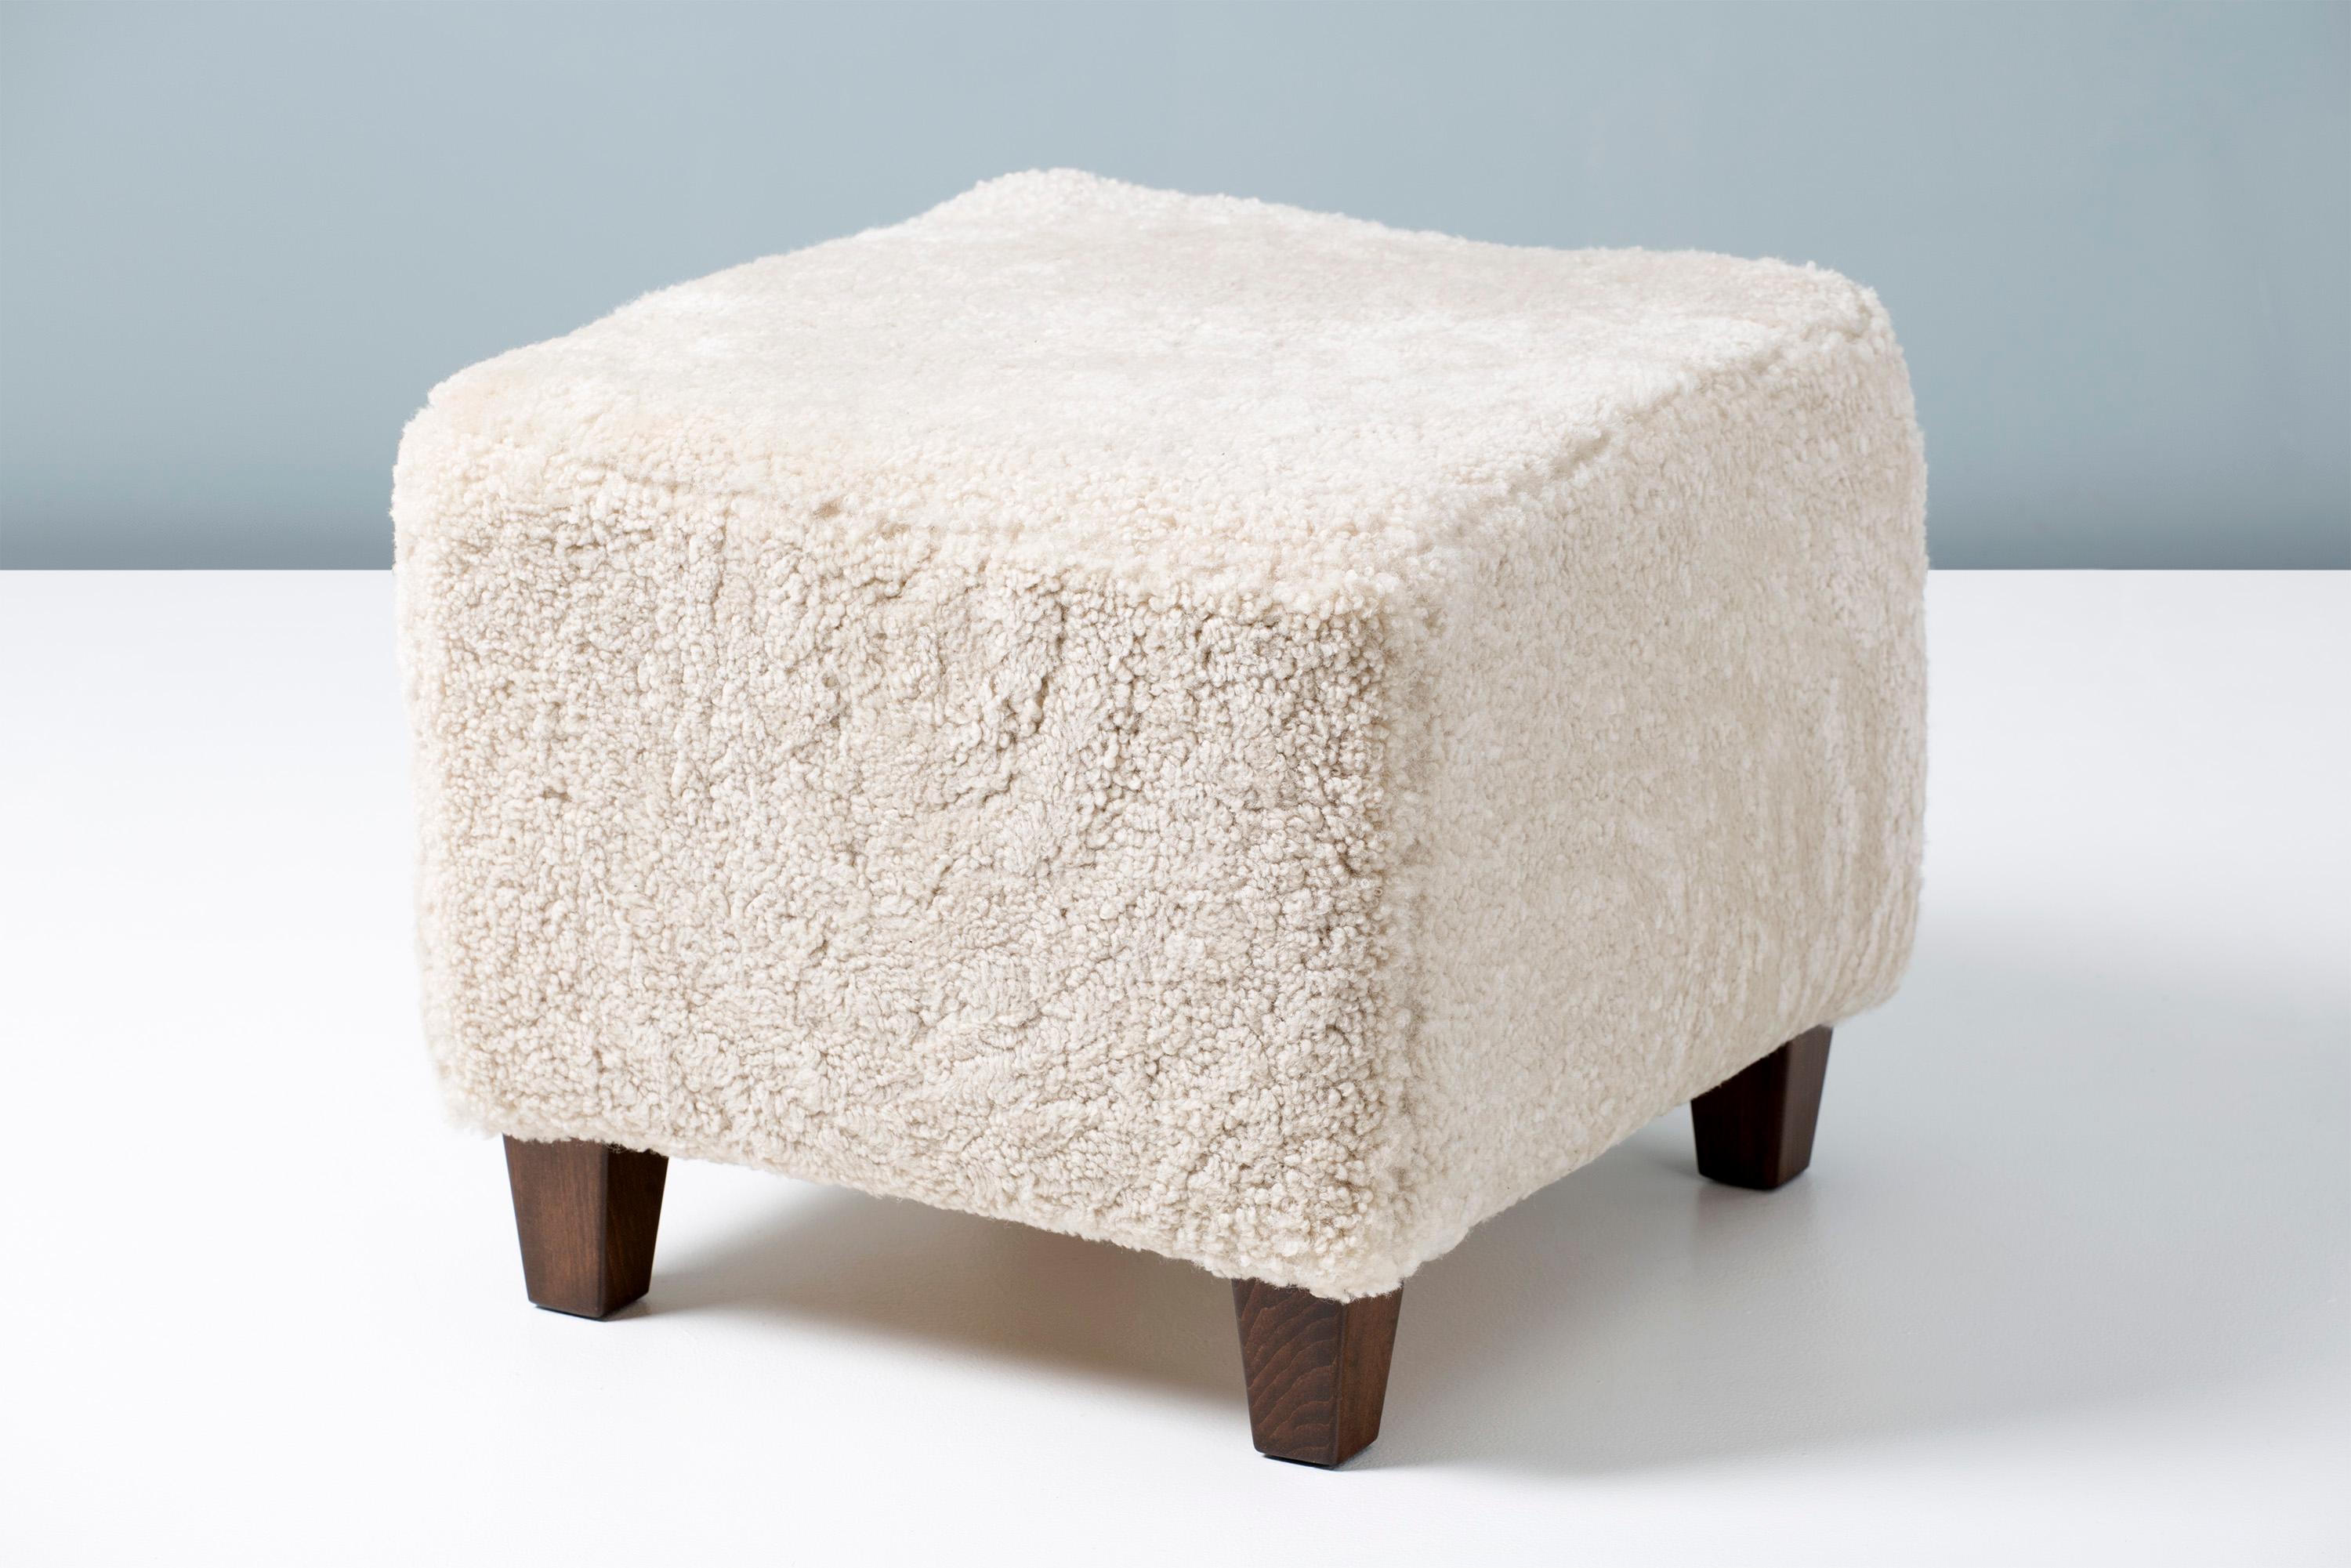 Un ottoman en peau de mouton fait sur mesure sur une base en bois dur avec des pieds en hêtre teinté. Le corps en mousse est recouvert de shearling australien touffeté de première qualité. 

Cet article est fabriqué sur commande dans notre atelier